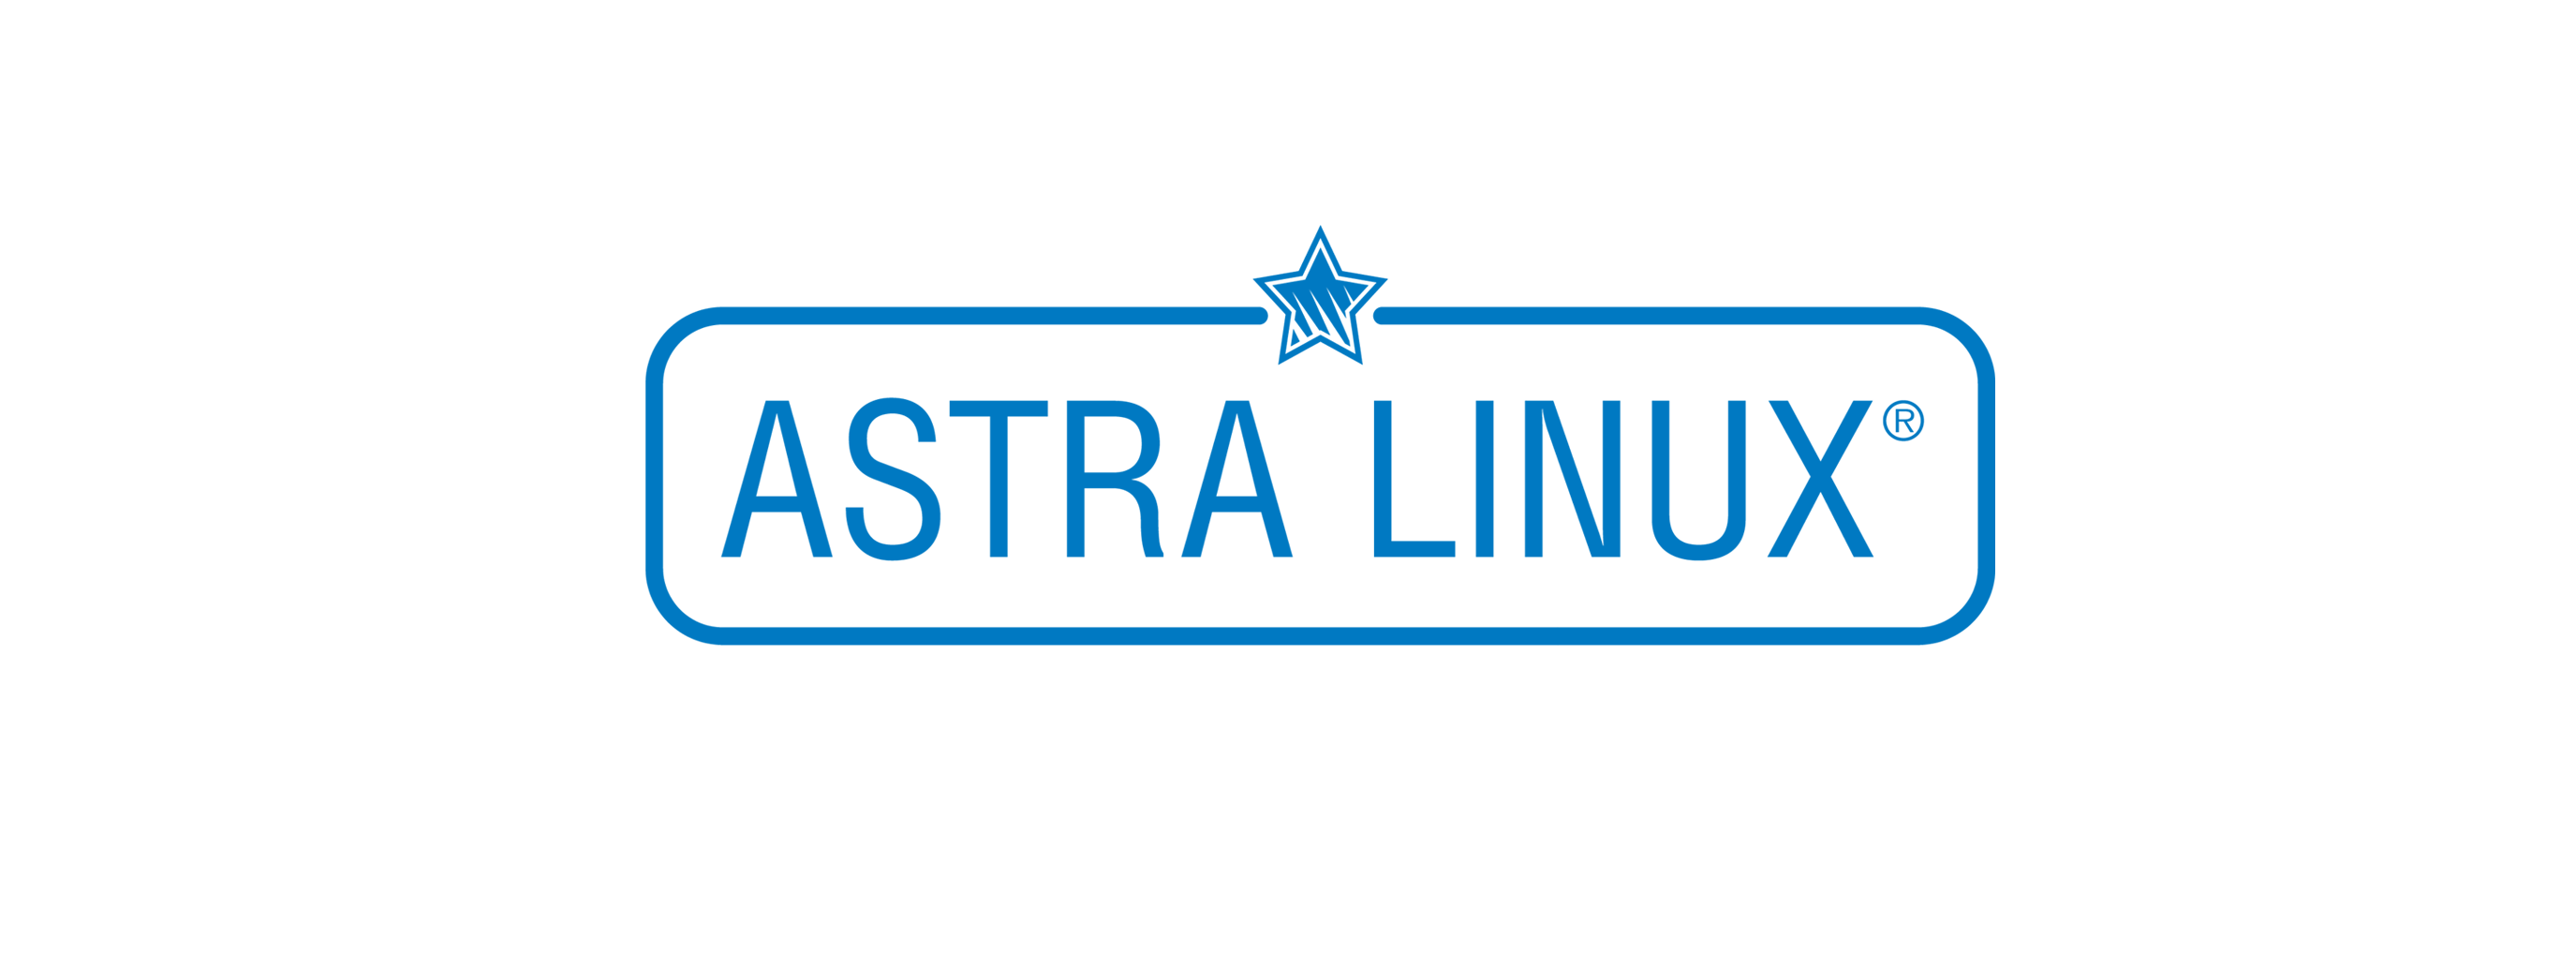 Лицензия РусБИТех Astra Linux Special Edition (очередное обновление 1.7), уровень защищенности Максимальный (Смоленск), РУСБ.10015-01 (ФСТЭК)